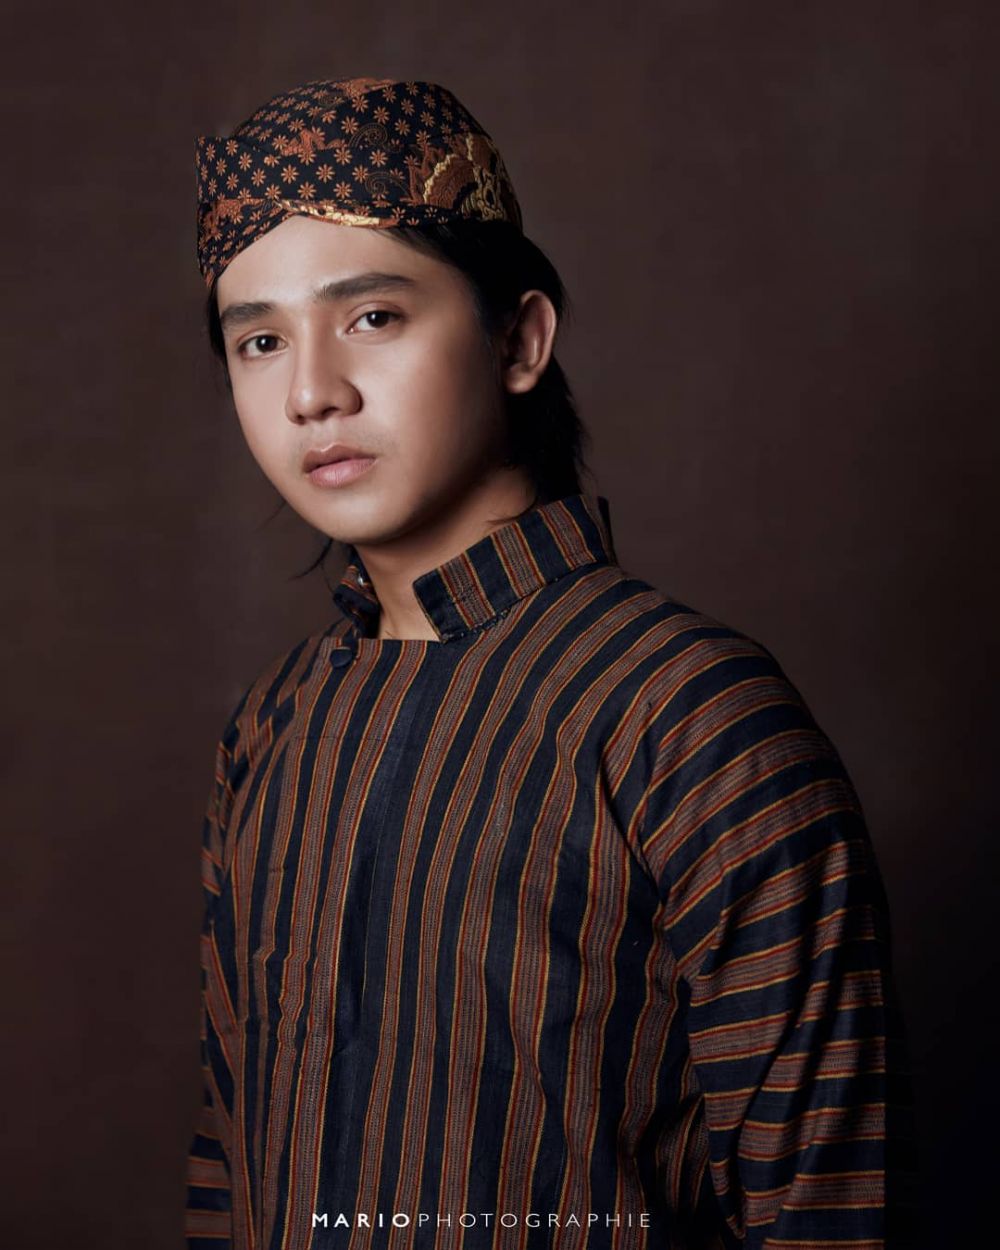 Gaya 12 aktor pakai baju Jawa, Bio One kenakan kebaya dan sanggul